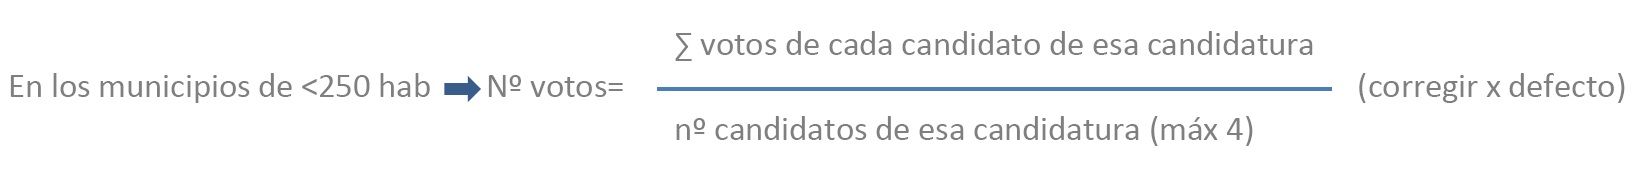 Fórmula cálcular los votos de una candidatura en municipios de menos de 250 habitantes